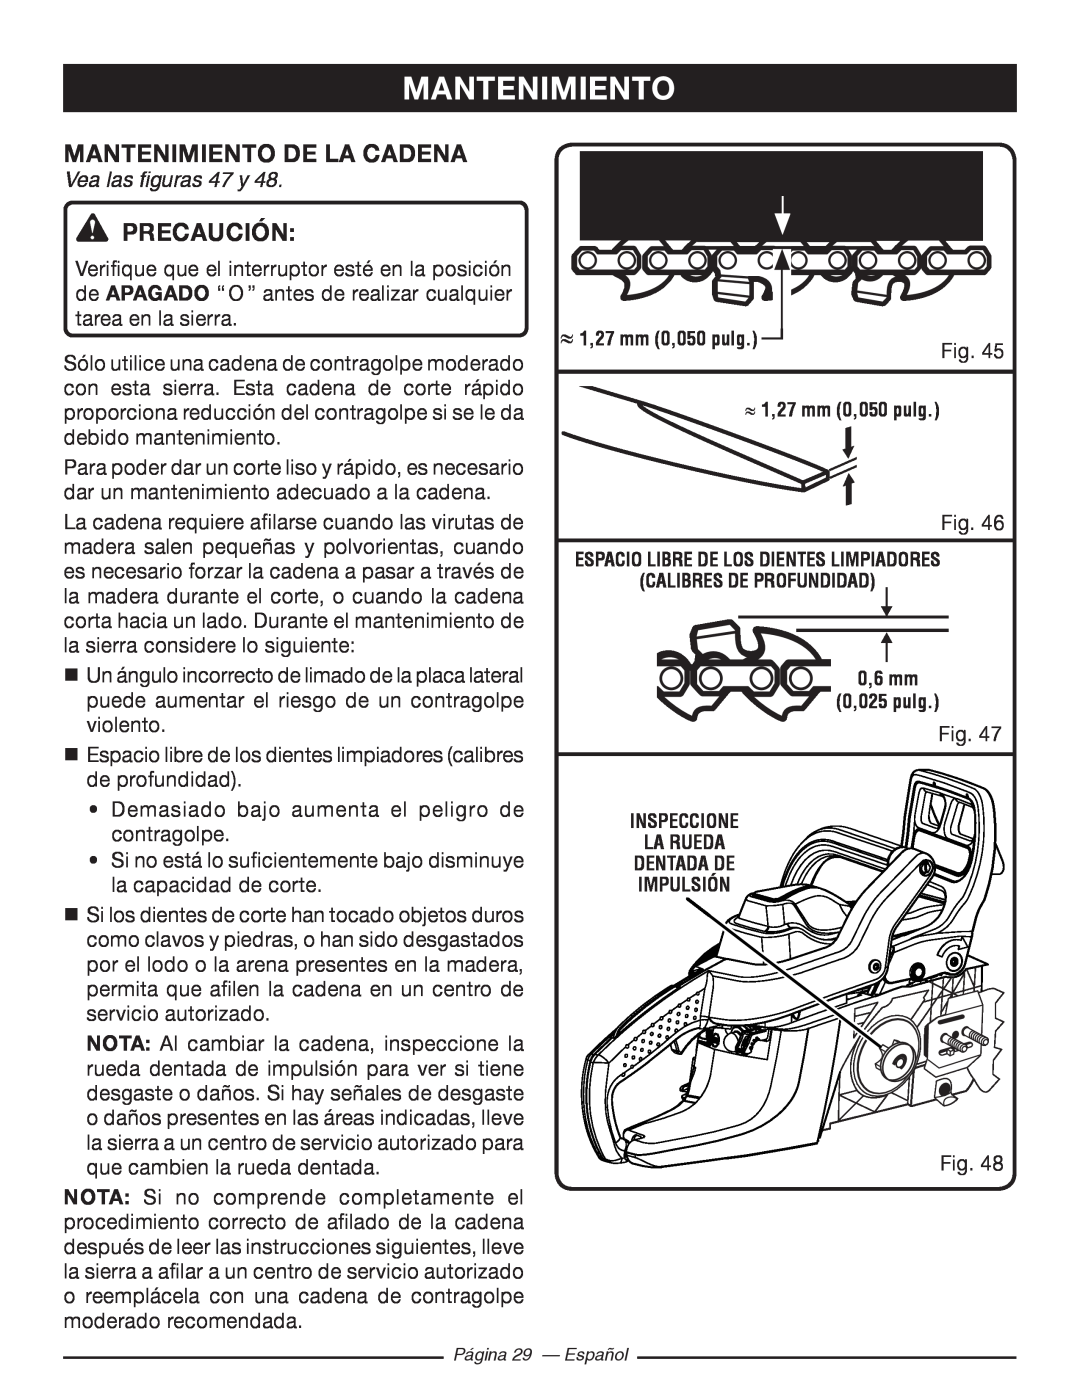 Ryobi RY10518, RY10520 manuel dutilisation Mantenimiento De La Cadena, Vea las figuras 47 y, Precaución 